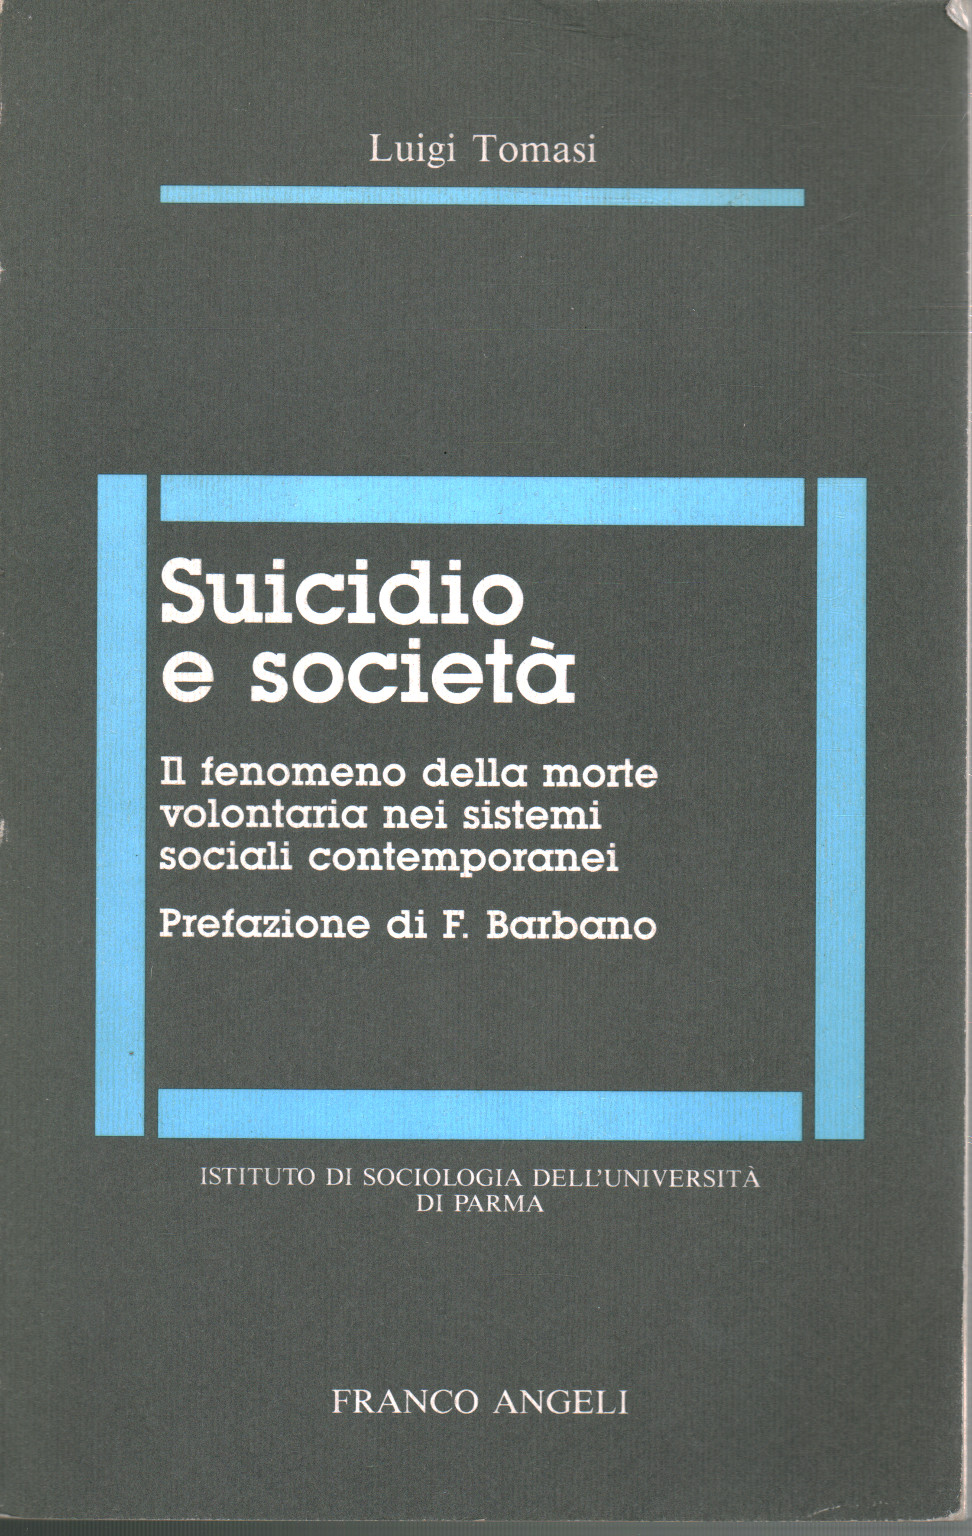 Suicidio e società, s.a.